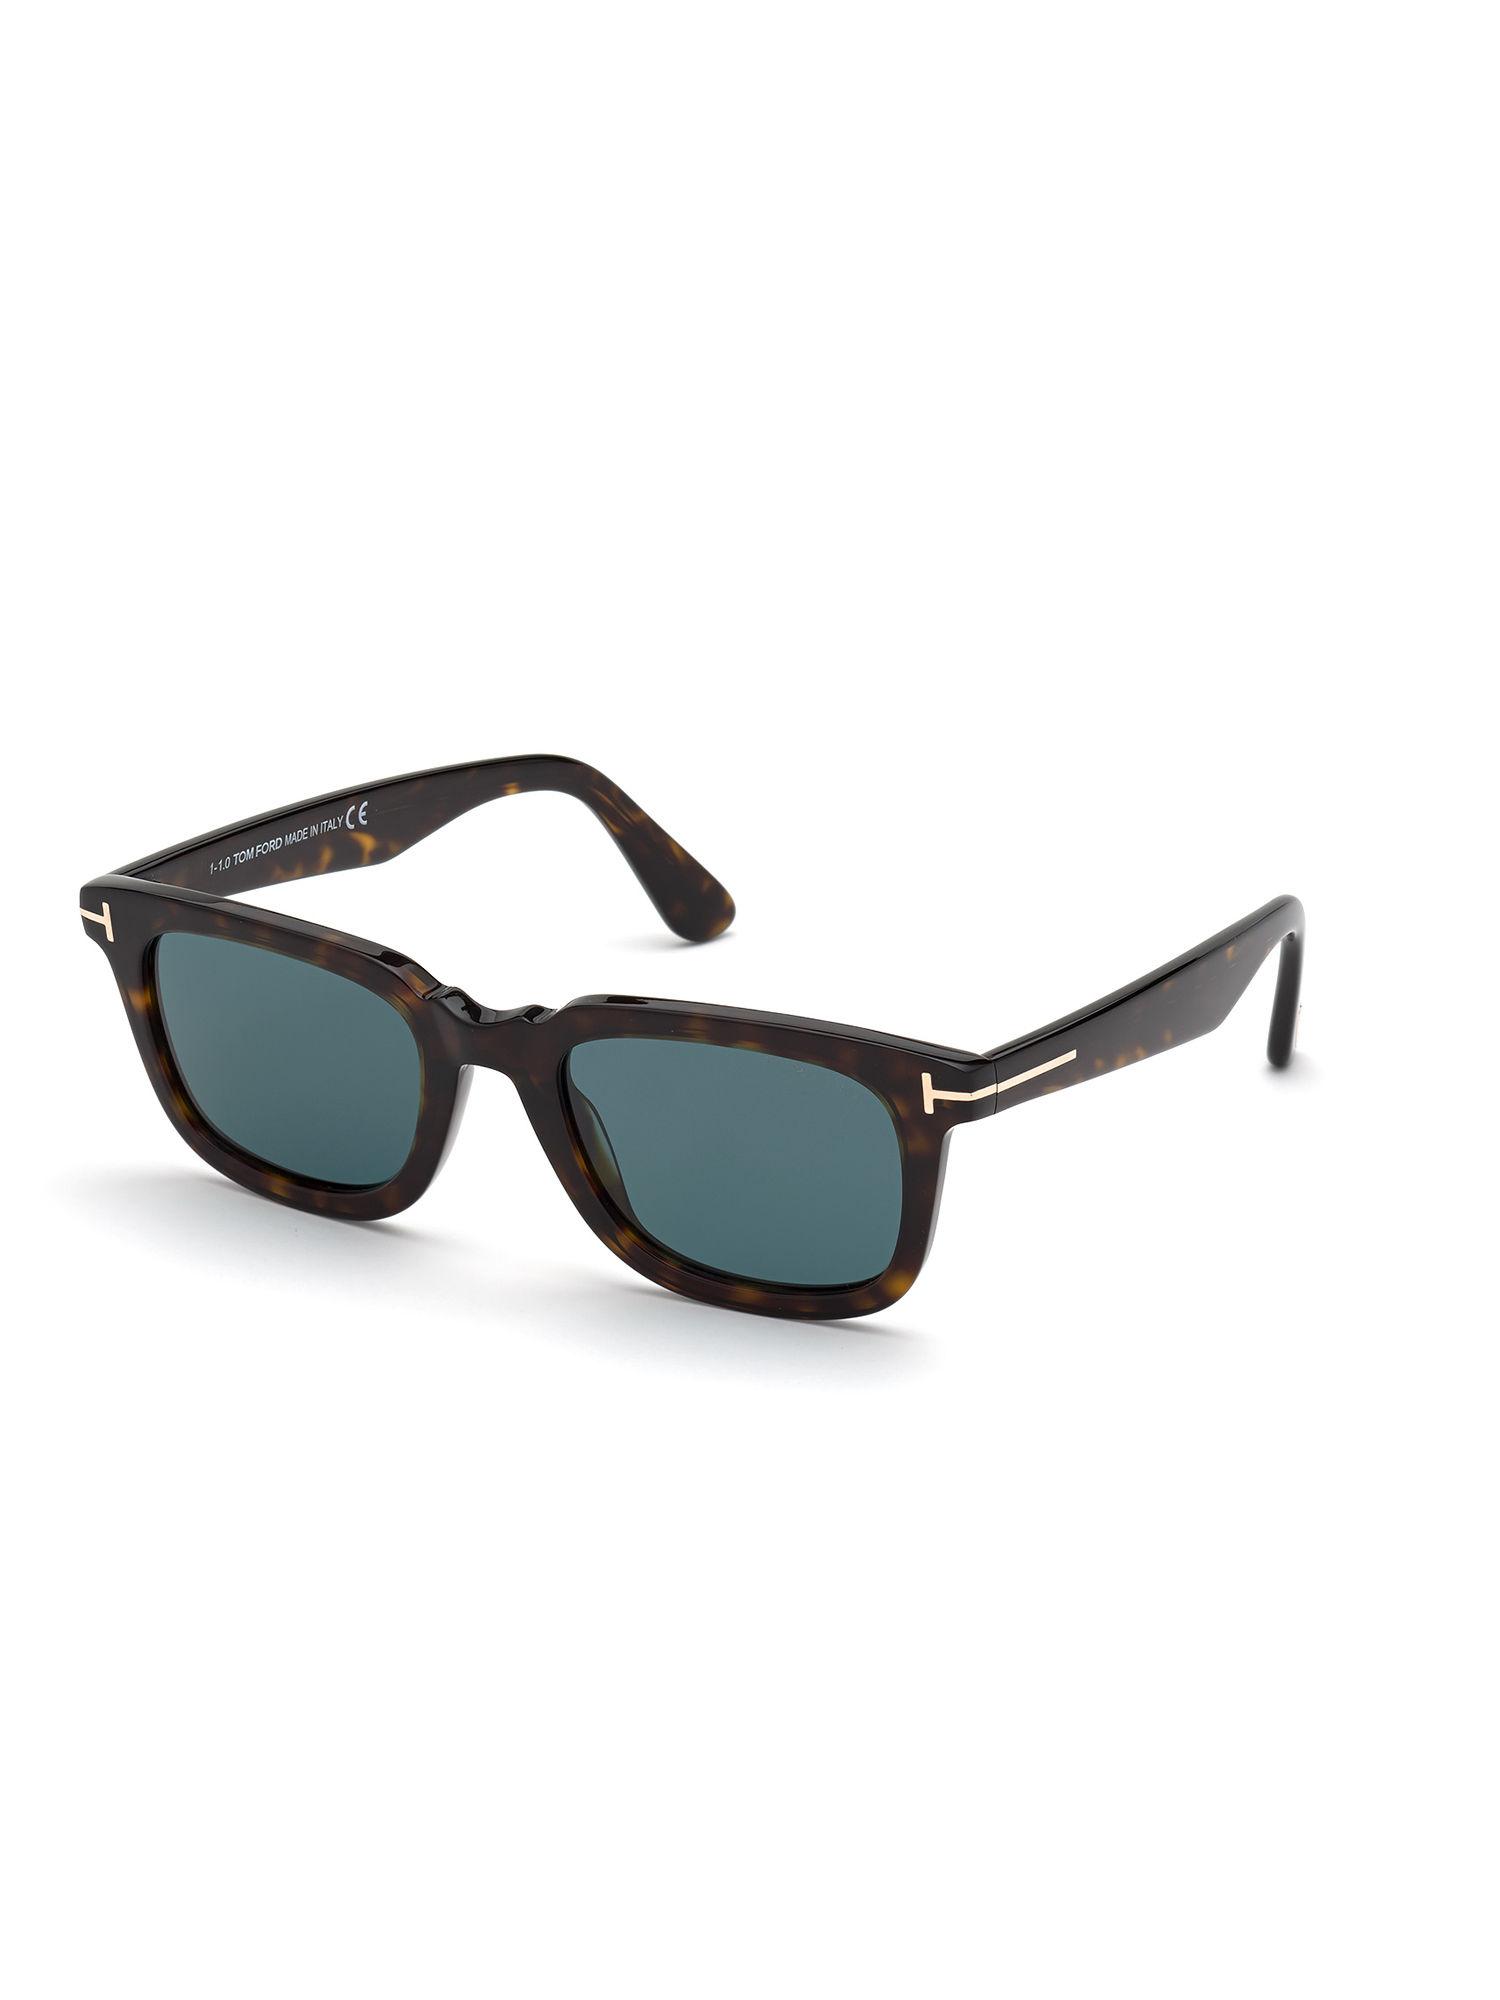 Brown Plastic Sunglasses FT0817 51 52V